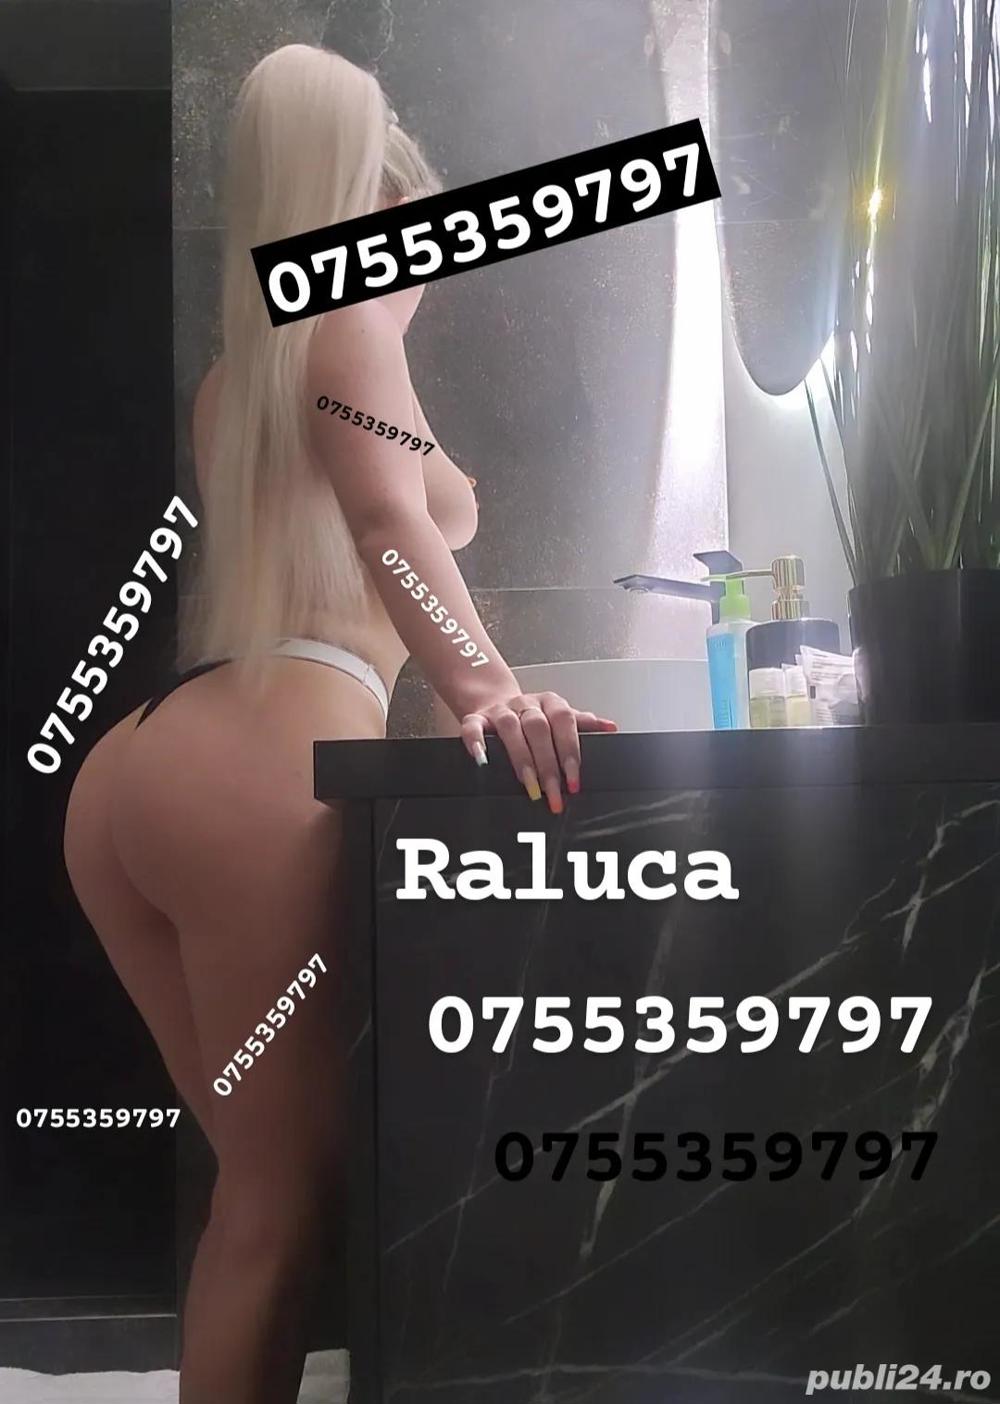 Raluca Piercing intim  - imagine 2